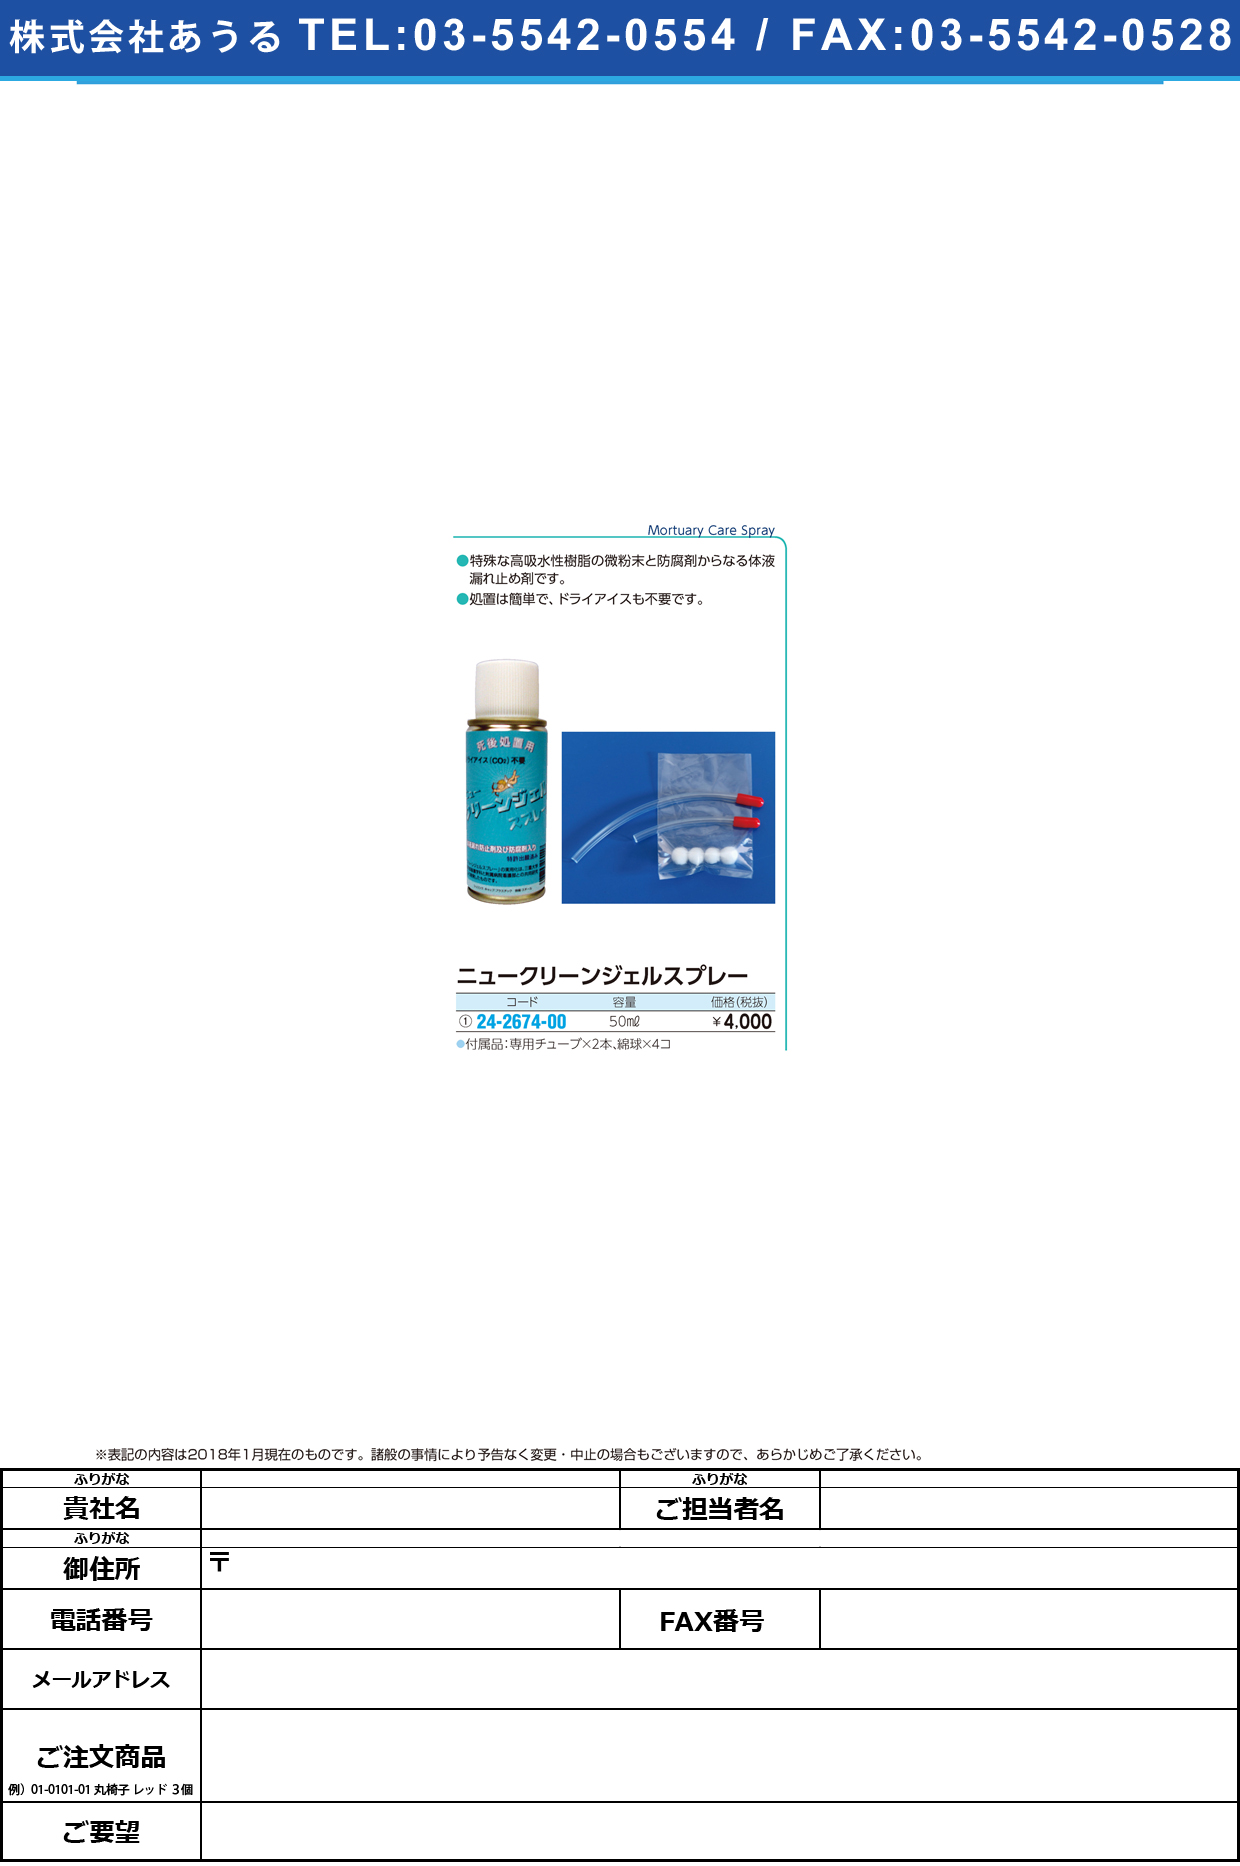 (24-2674-00)ニュークリーンジェルスプレー 50ML ﾆｭｰｸﾘｰﾝｼﾞｪﾙｽﾌﾟﾚｰ(白十字)【1本単位】【2019年カタログ商品】